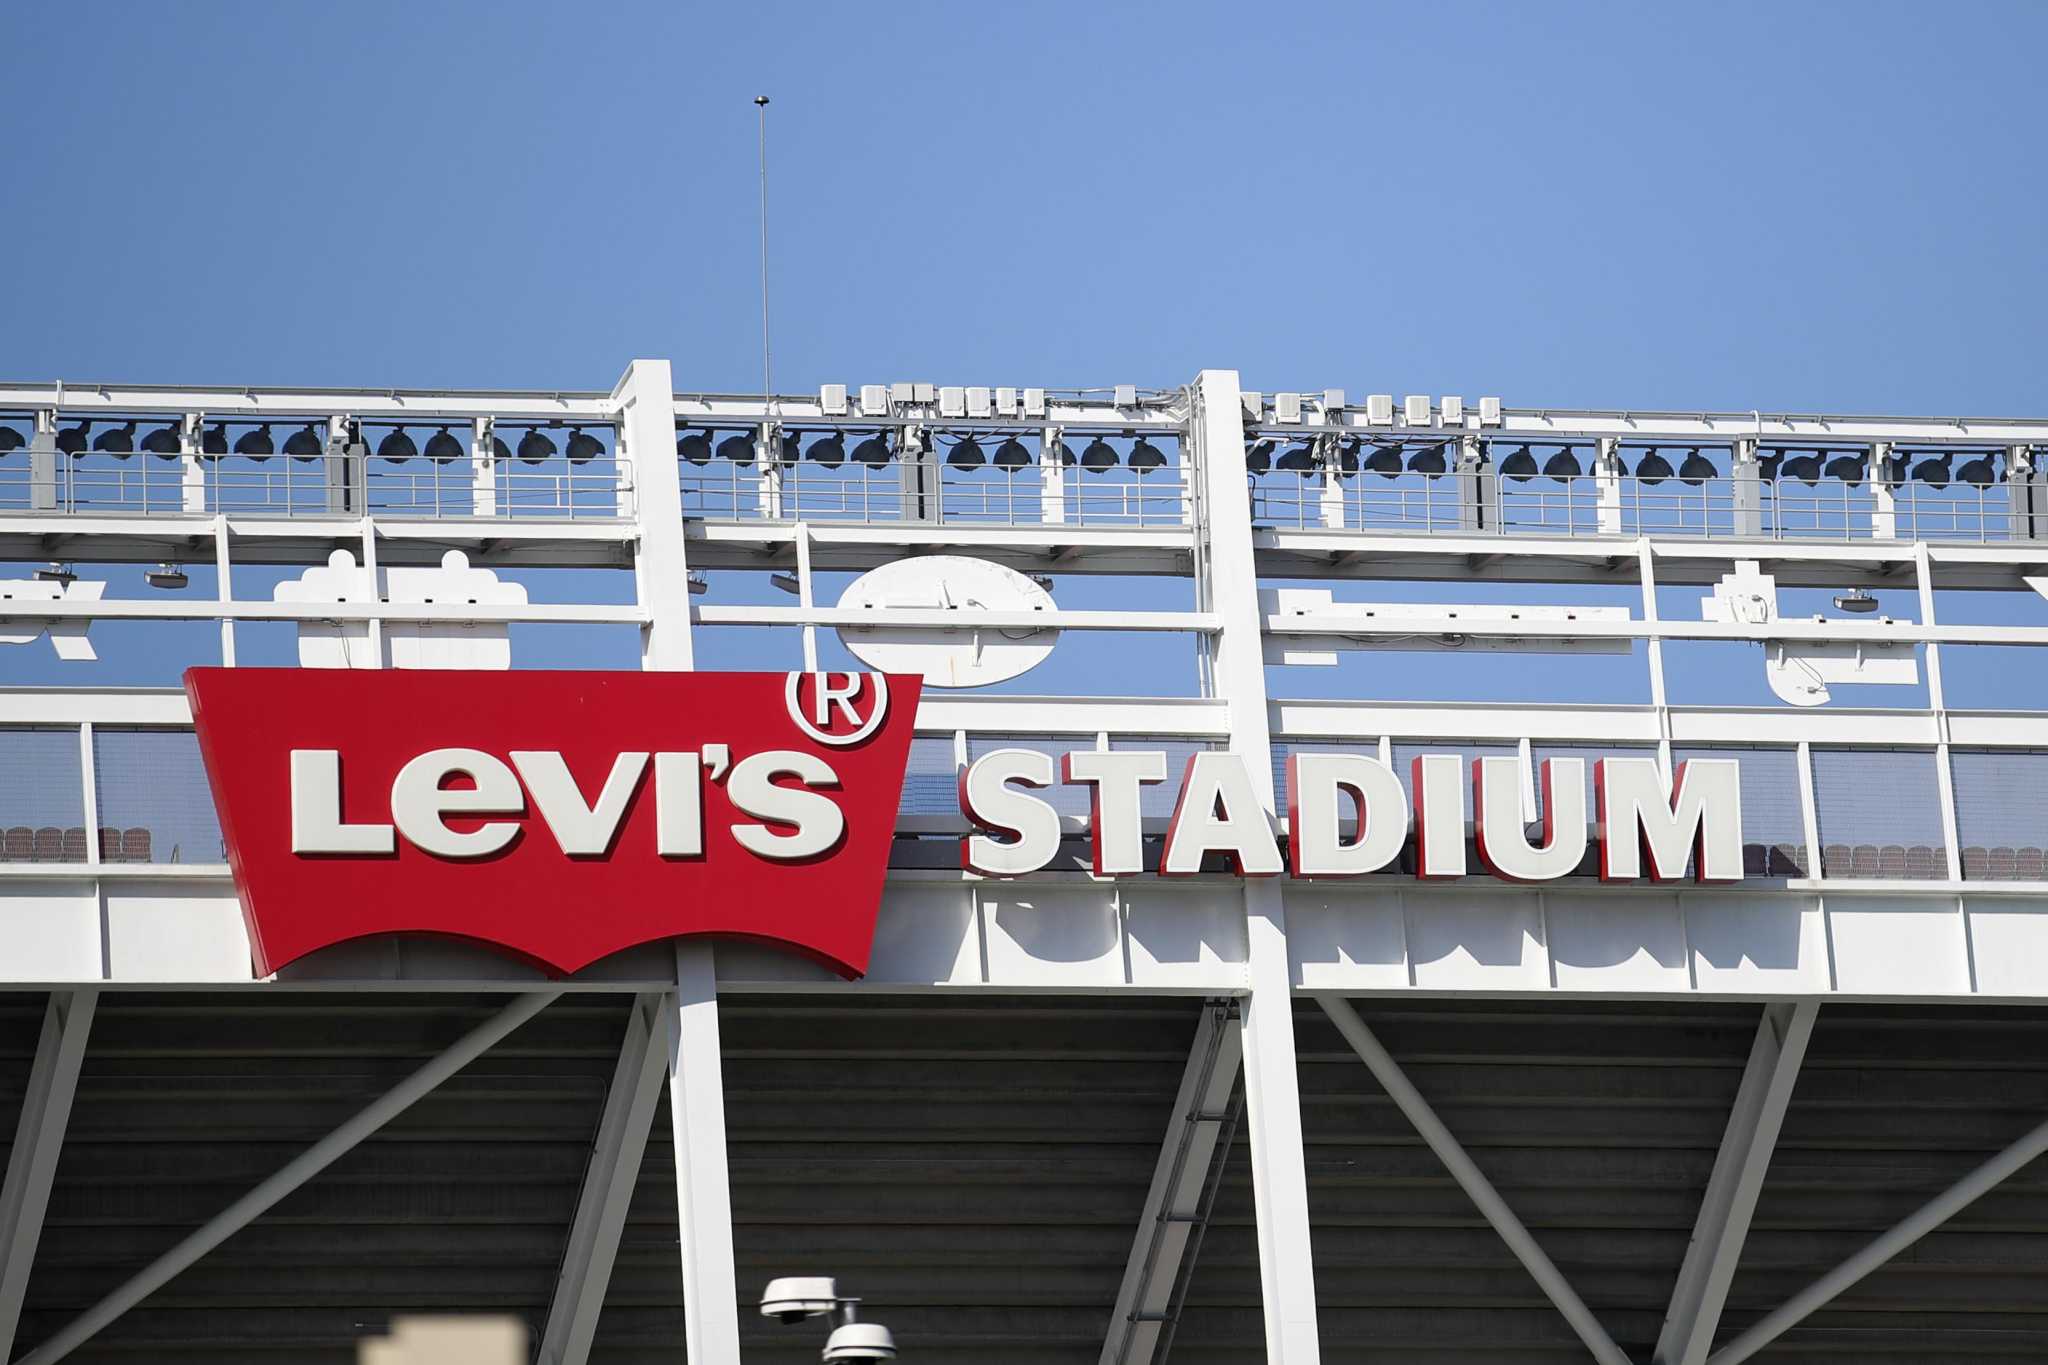 49ers offer to Santa Clara's Levi's Stadium revenue lawsuit